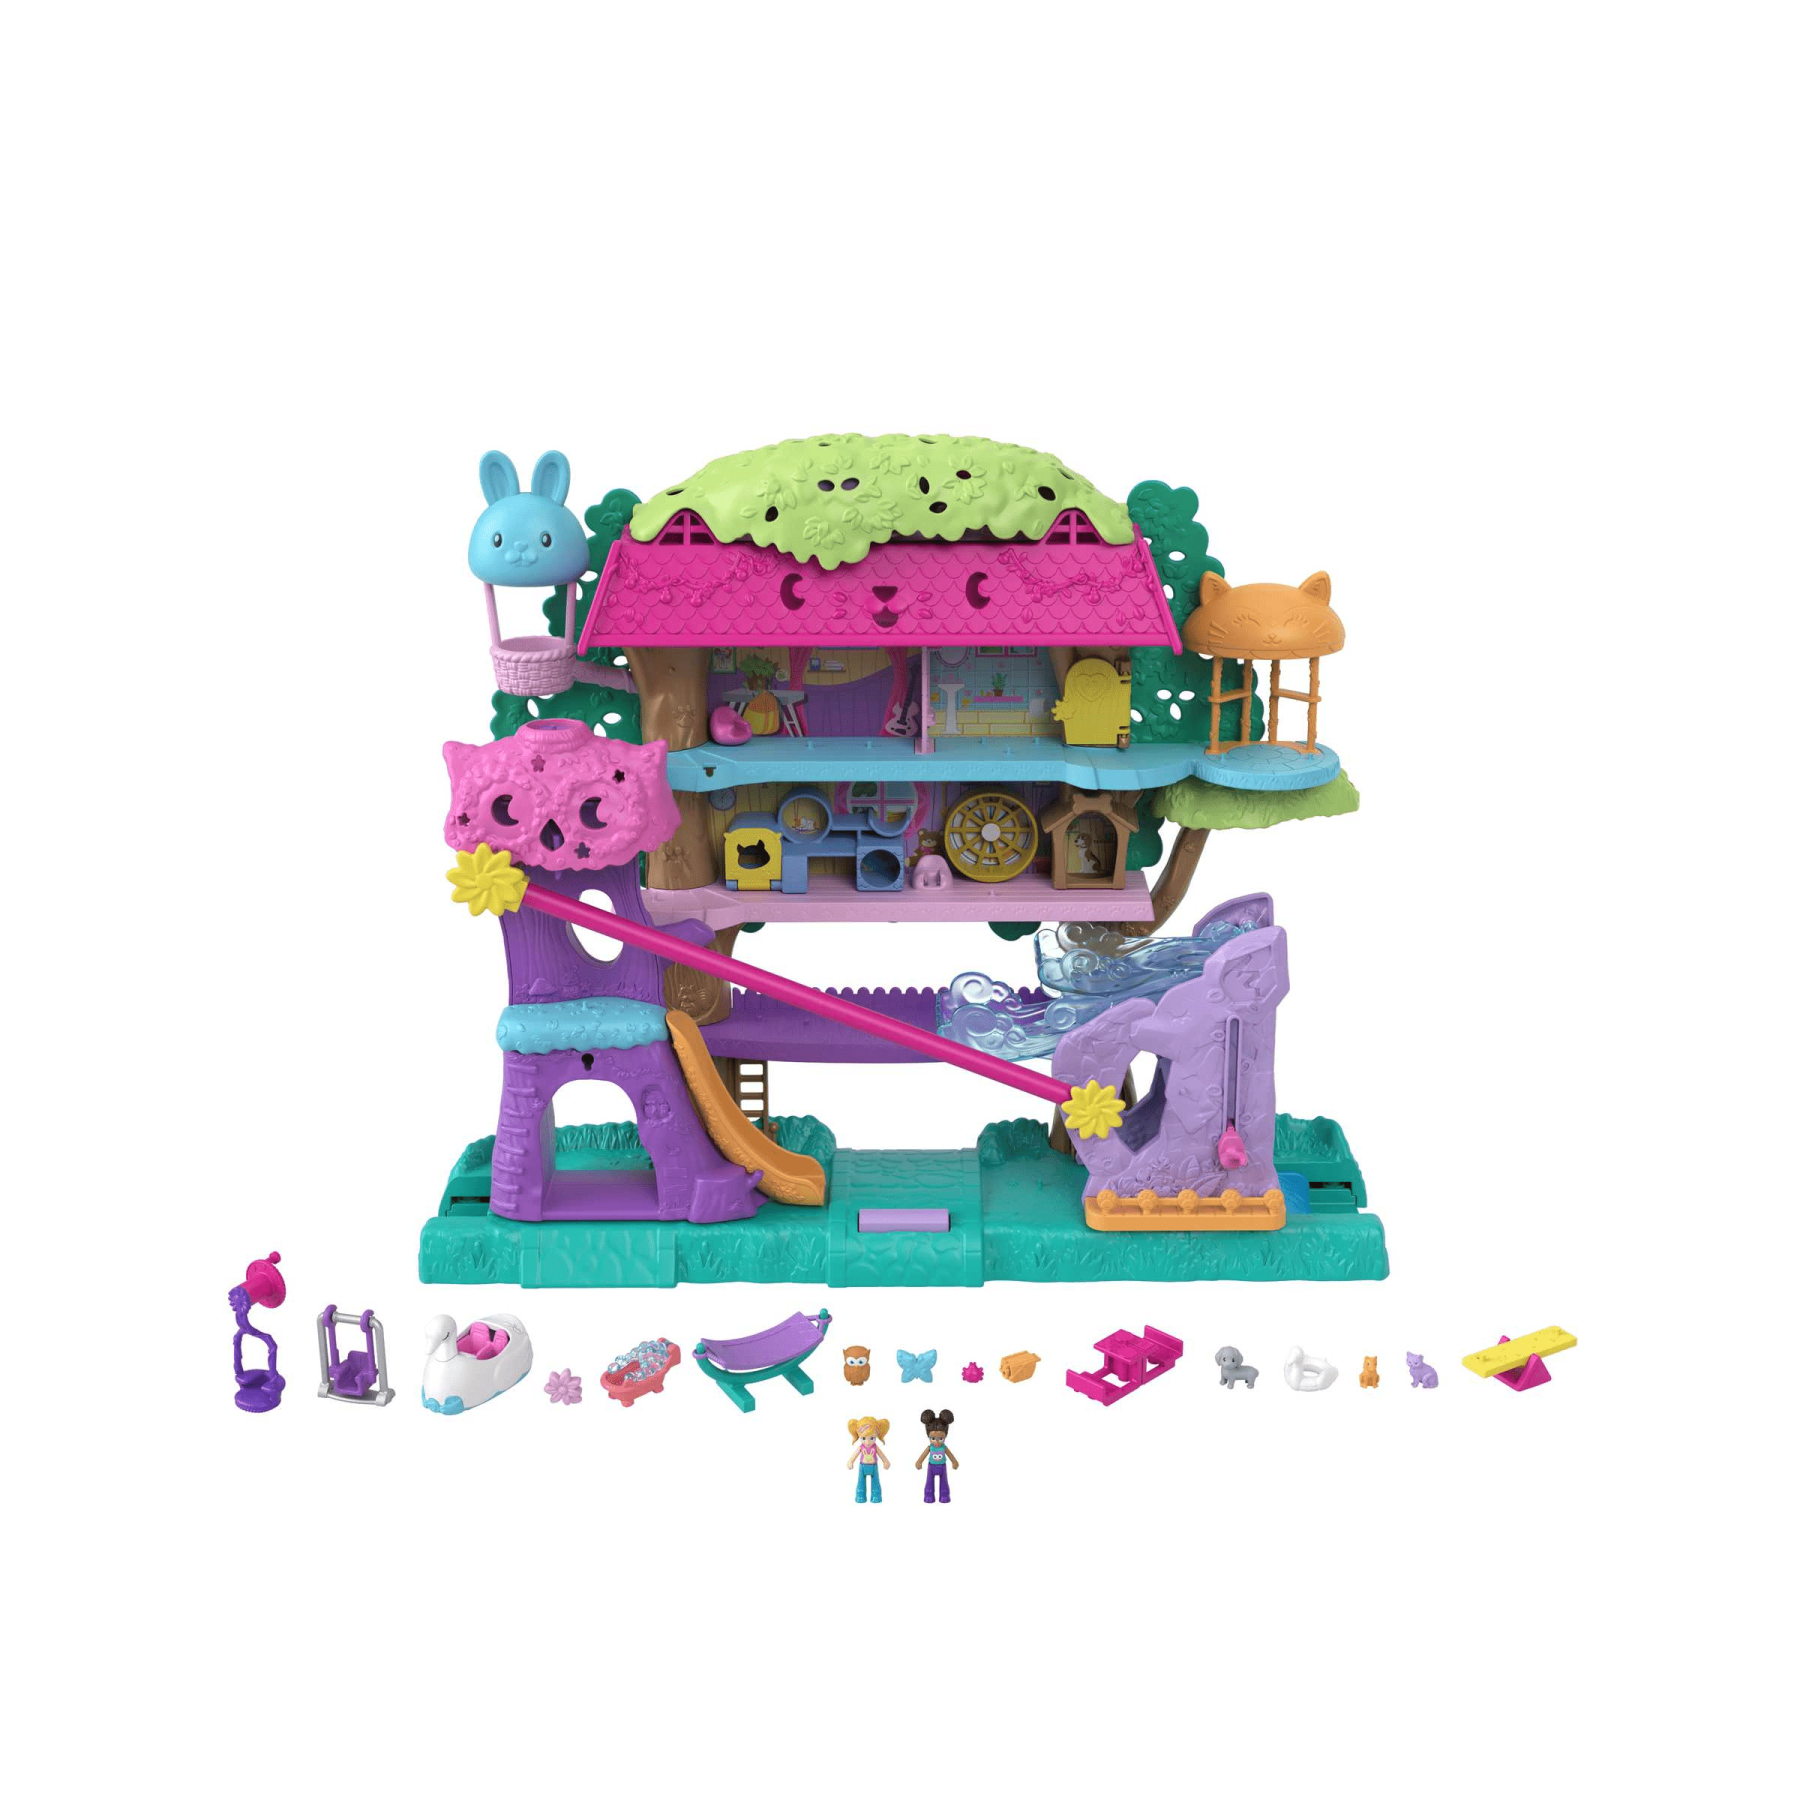 Polly pocket pollyville casa sull'albero dei cuccioli, playset a 5 piani, 15+ pezzi gioco: 2 bambole, veicolo, 4 animali e accessori, giocattolo per bambini 4+ anni - Polly Pocket